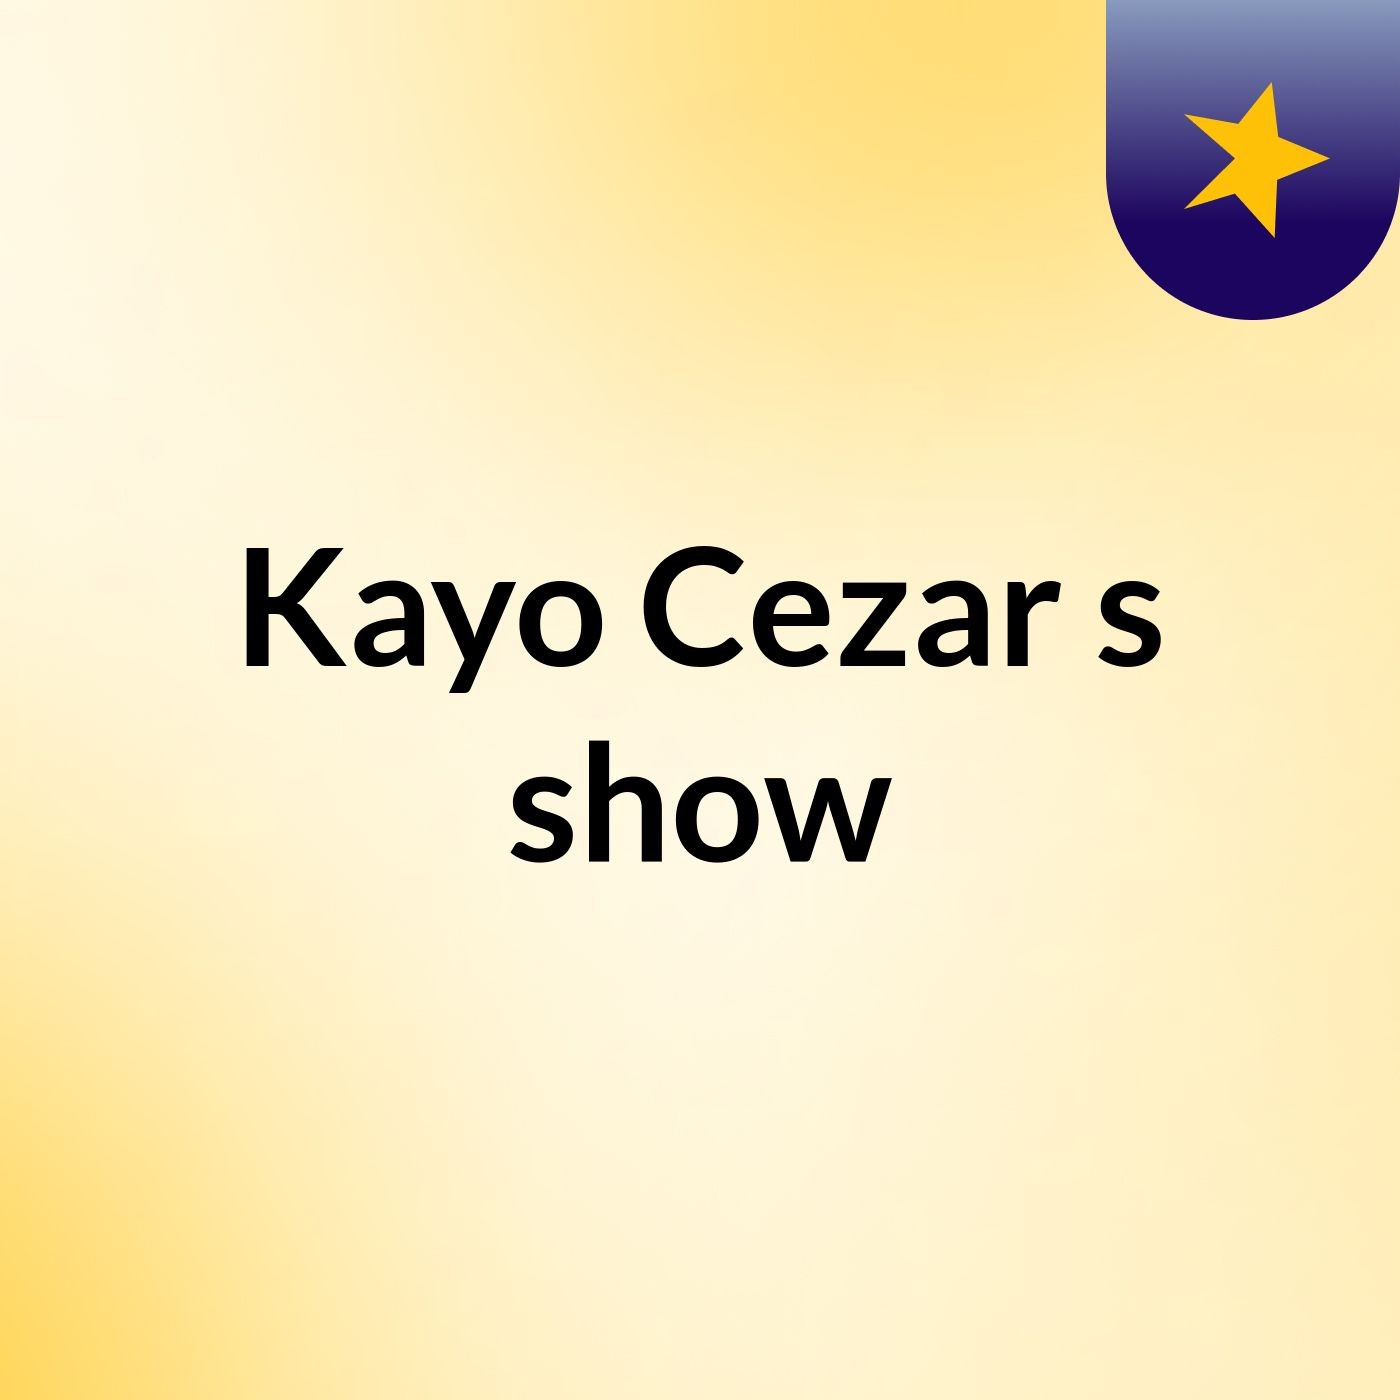 Kayo Cezar's show